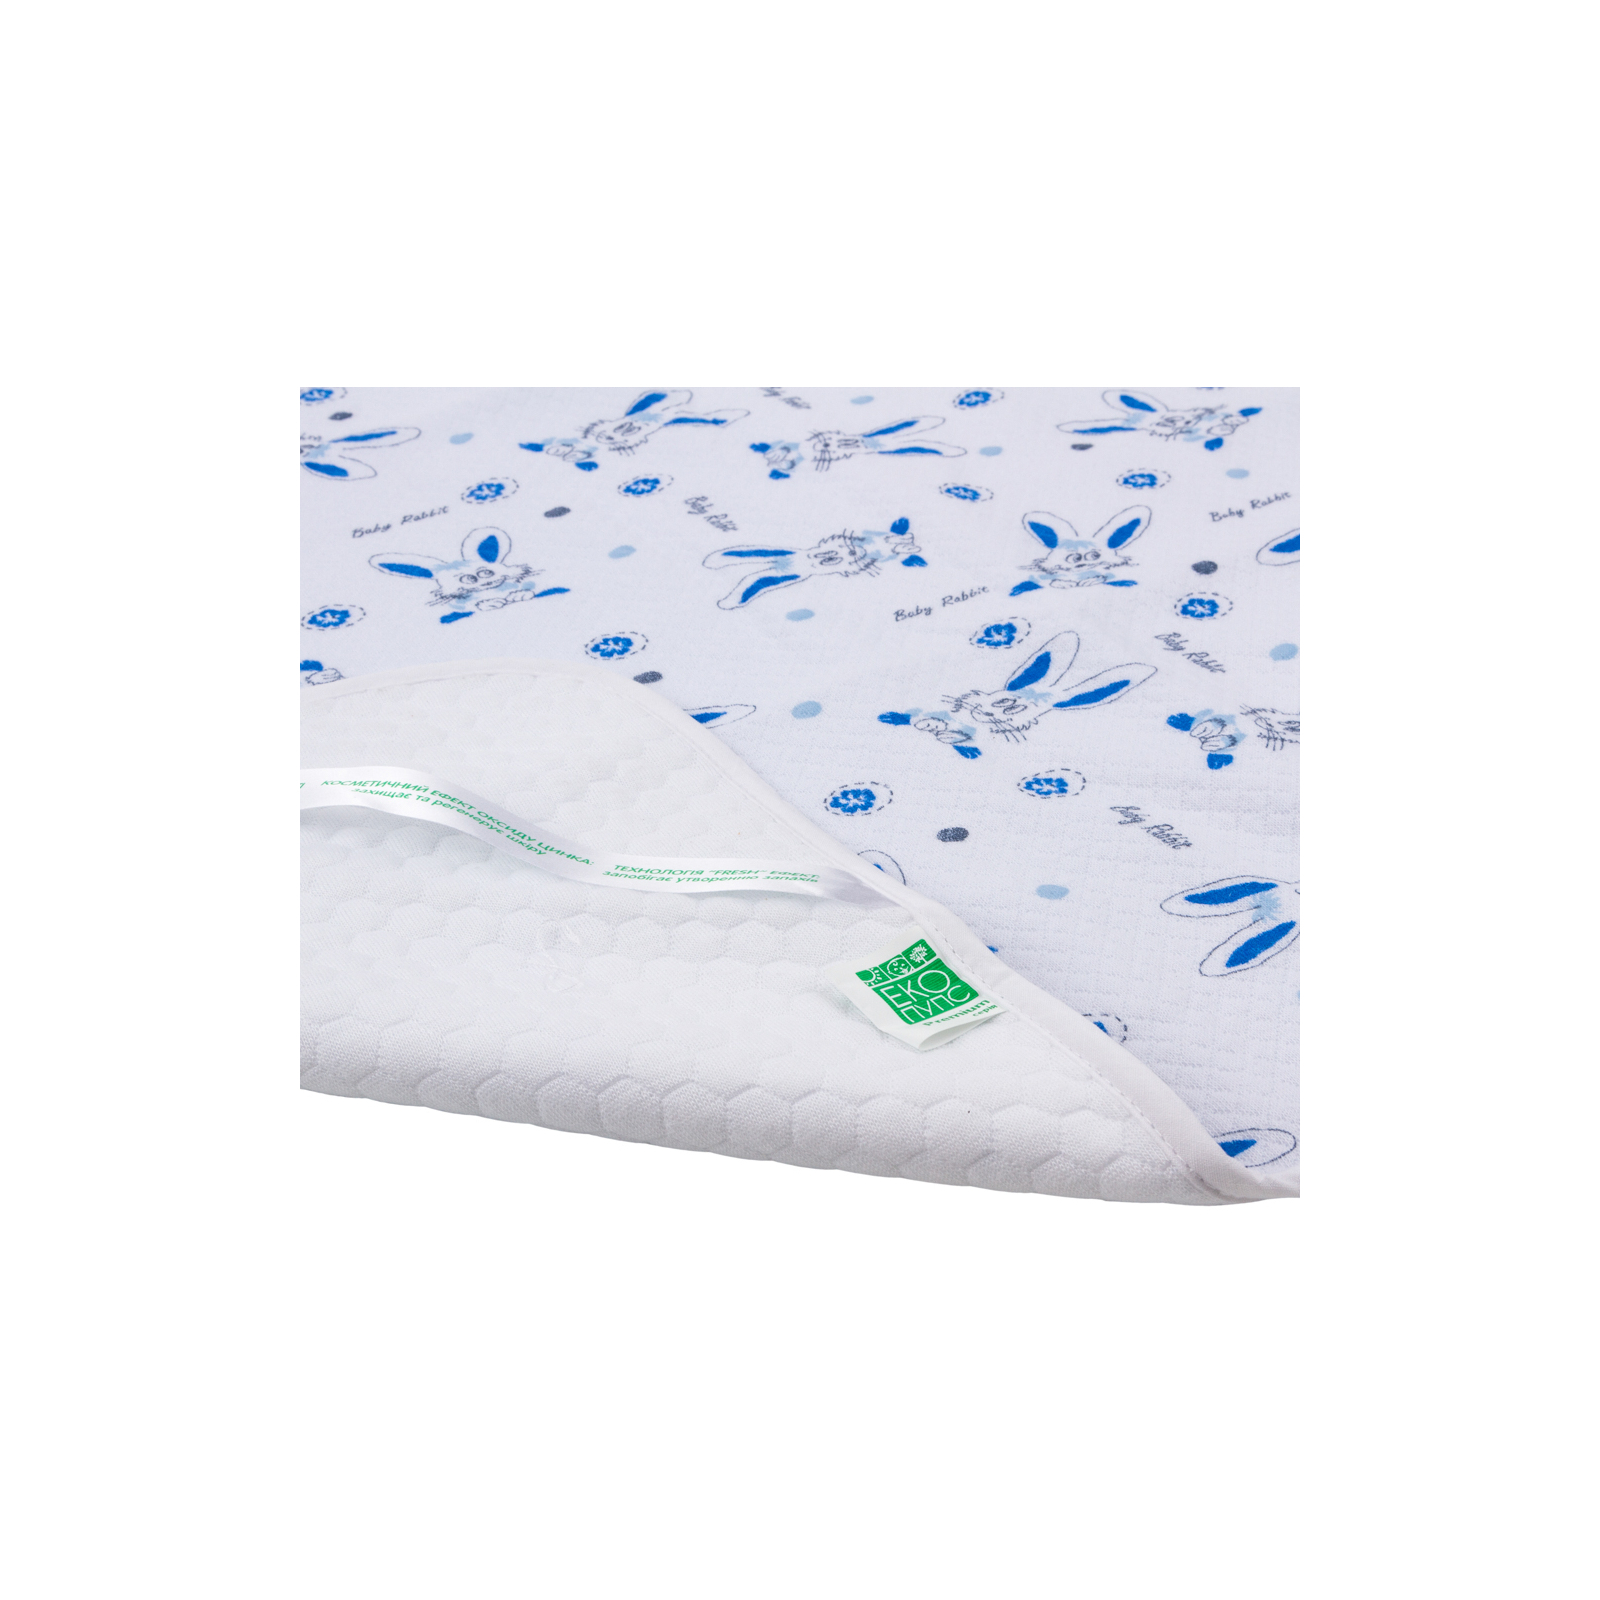 Пеленки для младенцев Еко Пупс Soft Touch Premium непромокаемая двухсторонняя 50 х 70 см счастливый медвежонок (EPG07W-5070hb) изображение 2